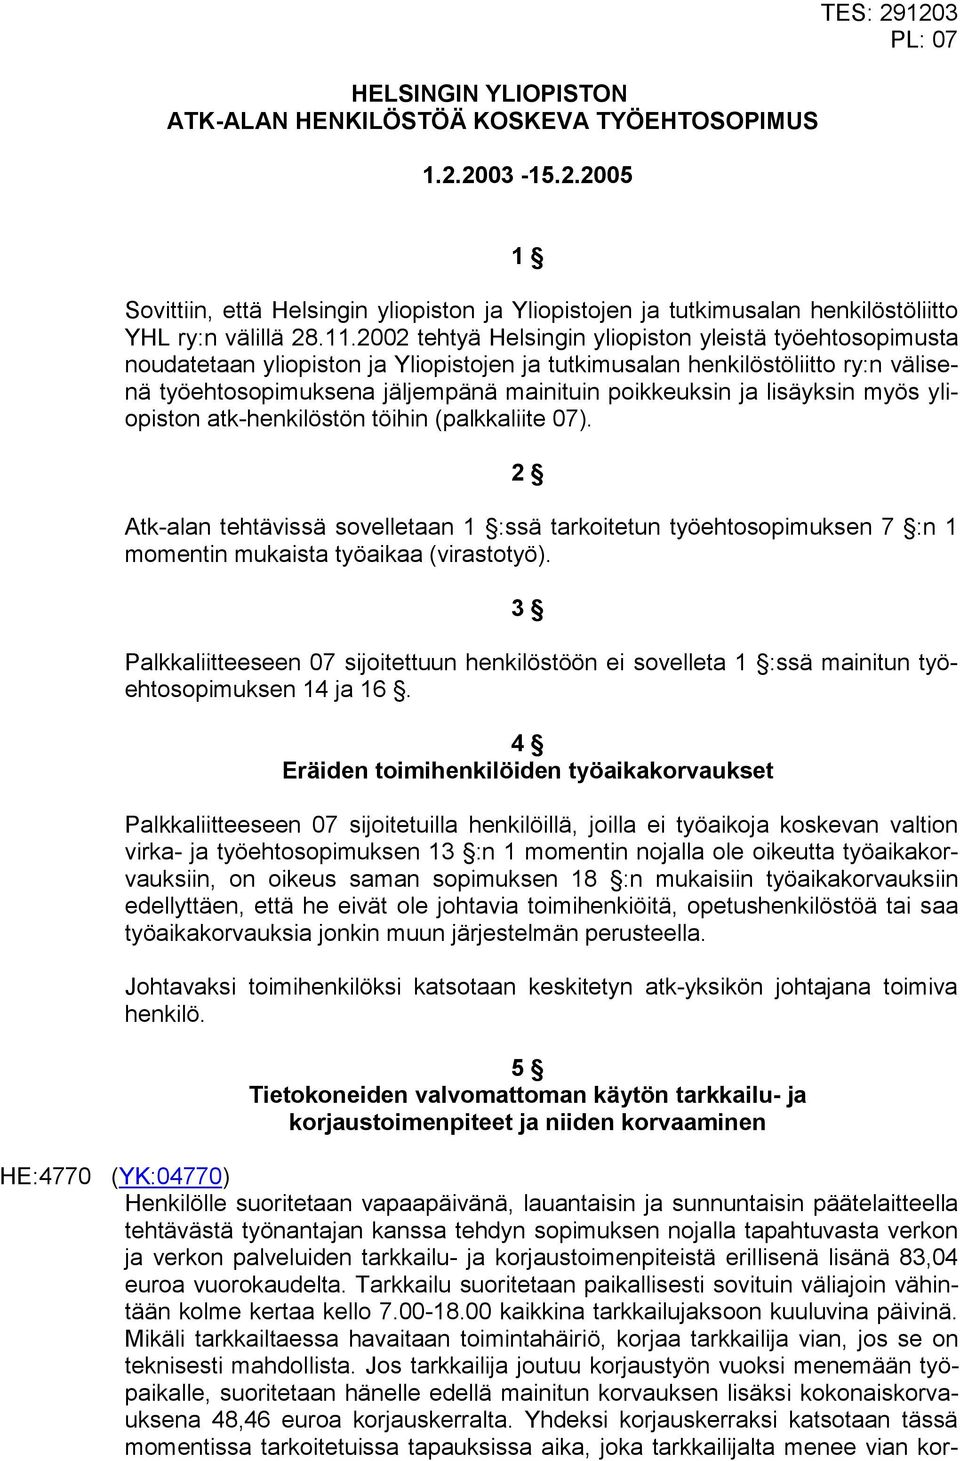 2002 tehtyä Helsingin yliopiston yleistä työehtosopimusta noudatetaan yliopiston ja Yliopistojen ja tutkimusalan henkilöstöliitto ry:n välisenä työehtosopimuksena jäljempänä mainituin poikkeuksin ja